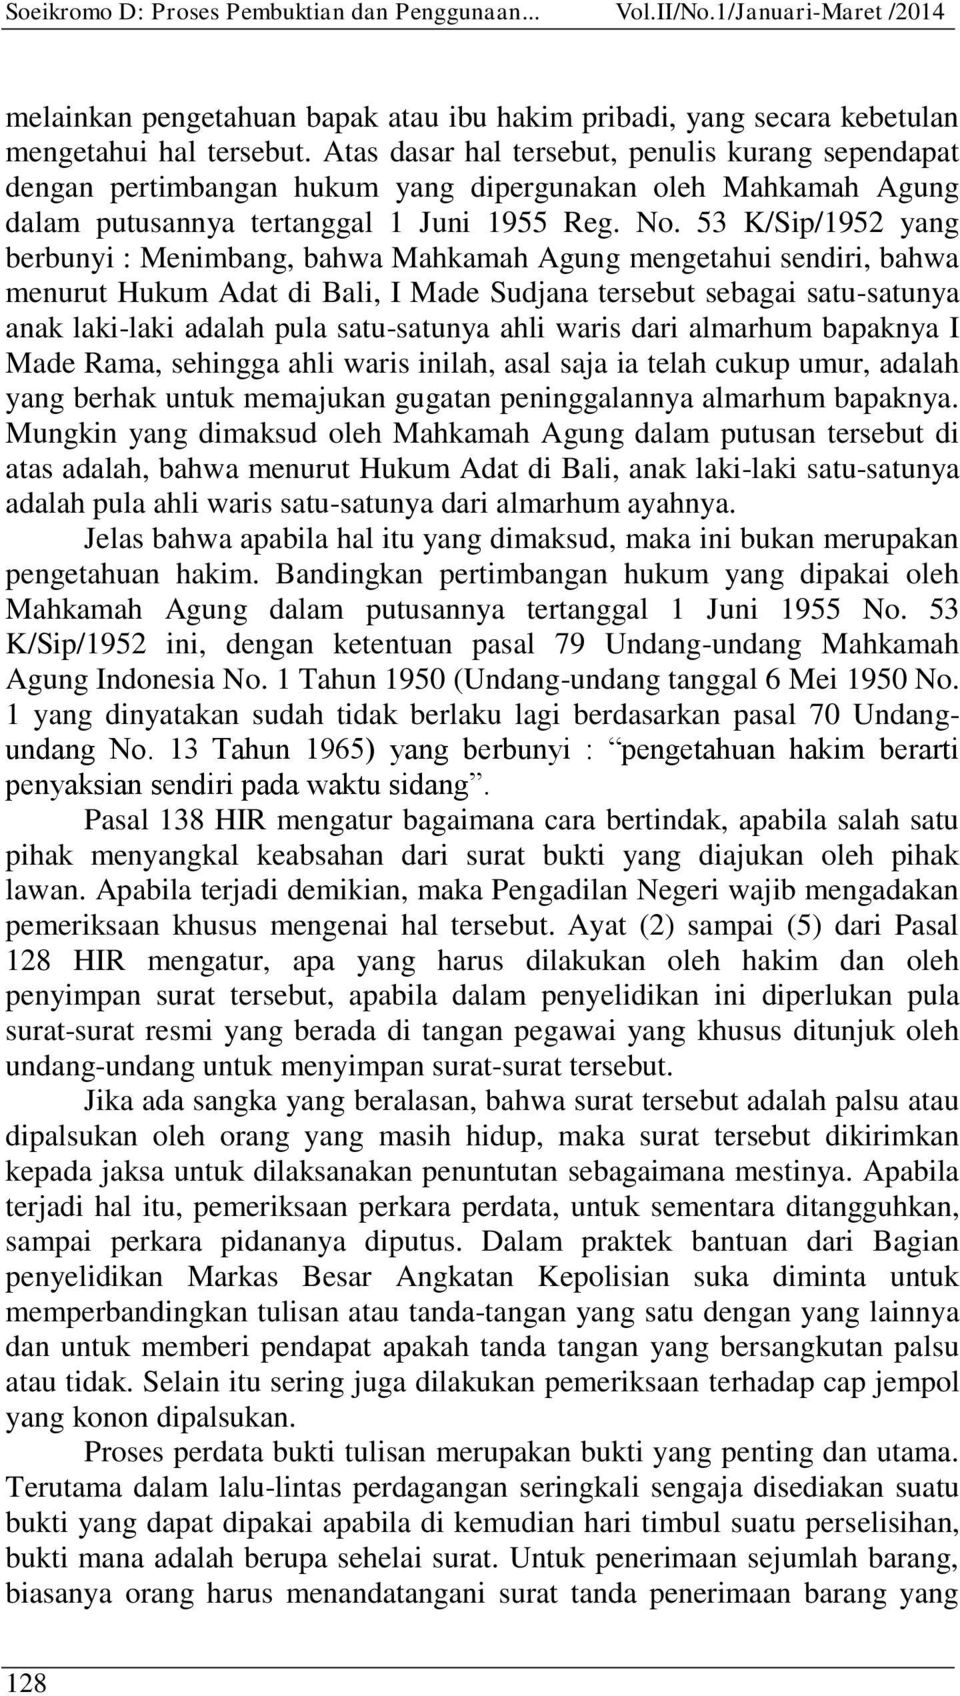 53 K/Sip/1952 yang berbunyi : Menimbang, bahwa Mahkamah Agung mengetahui sendiri, bahwa menurut Hukum Adat di Bali, I Made Sudjana tersebut sebagai satu-satunya anak laki-laki adalah pula